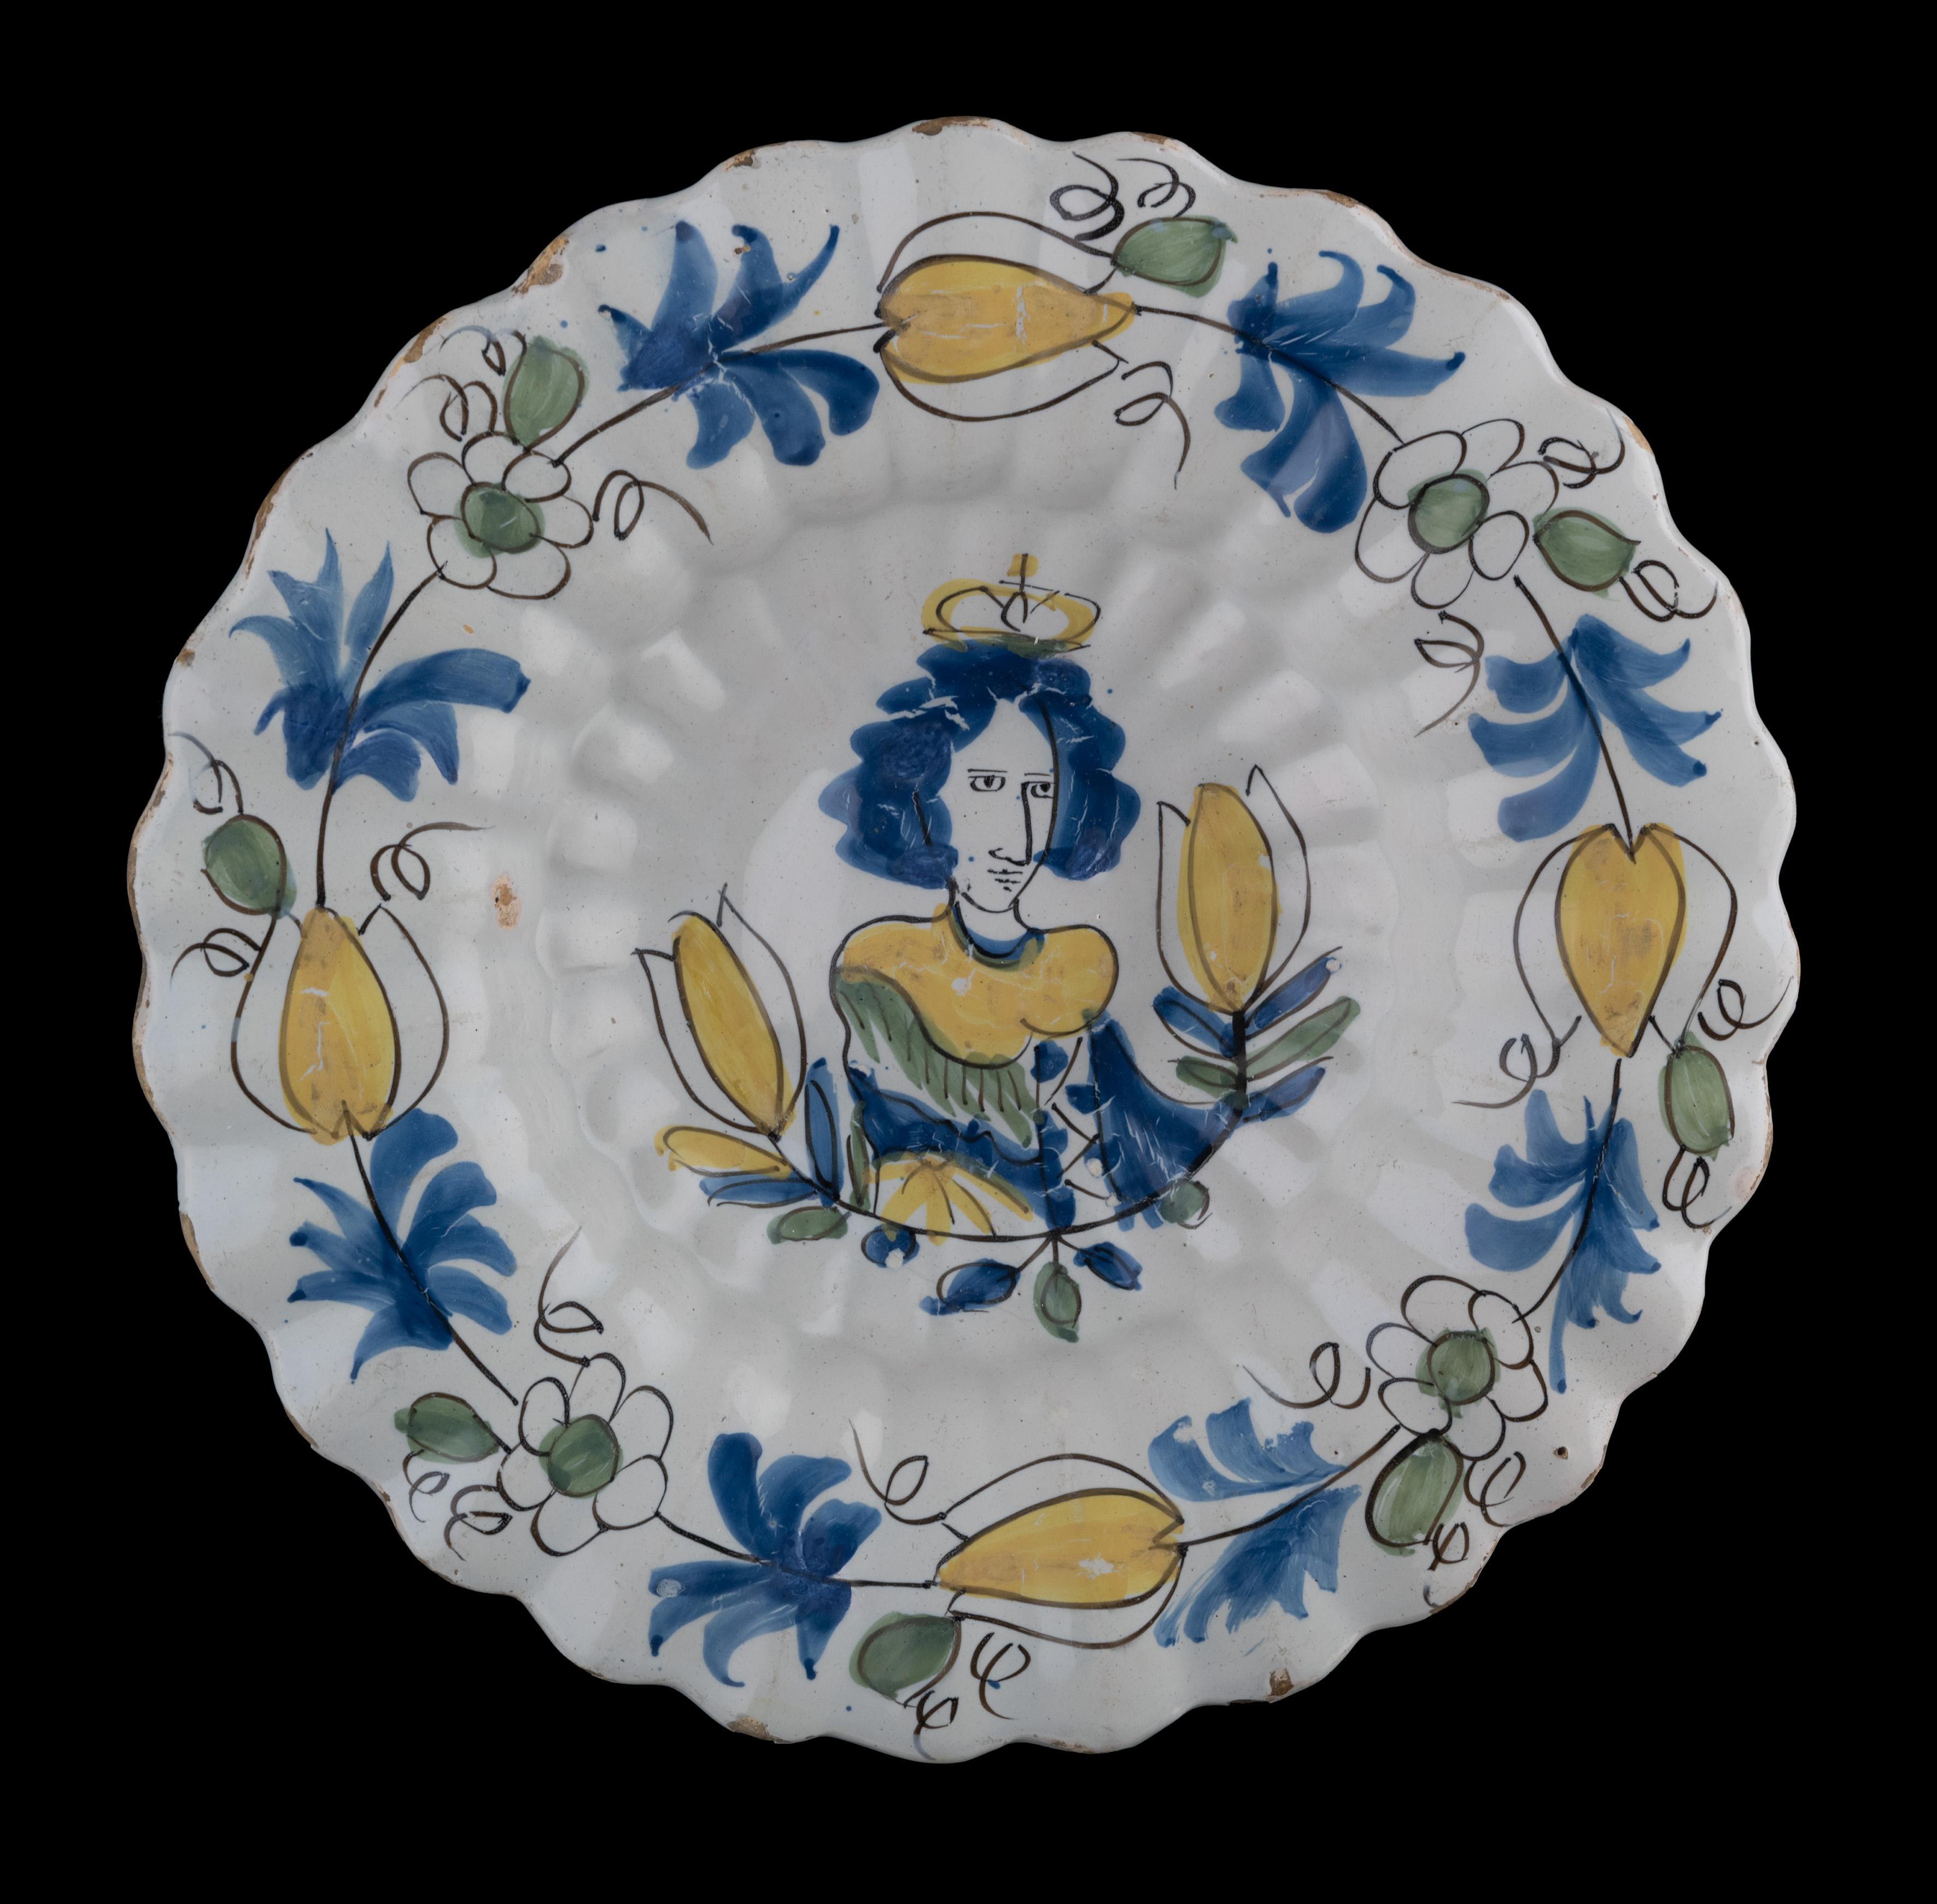 Plat lobé polychrome avec la Reine Marie II Stuart
Delft, vers 1690 

Le plat lobé polychrome est composé de vingt-sept doubles lobes et peint en bleu, vert et jaune avec une représentation de la reine Marie II Stuart entre deux tulipes. La bordure